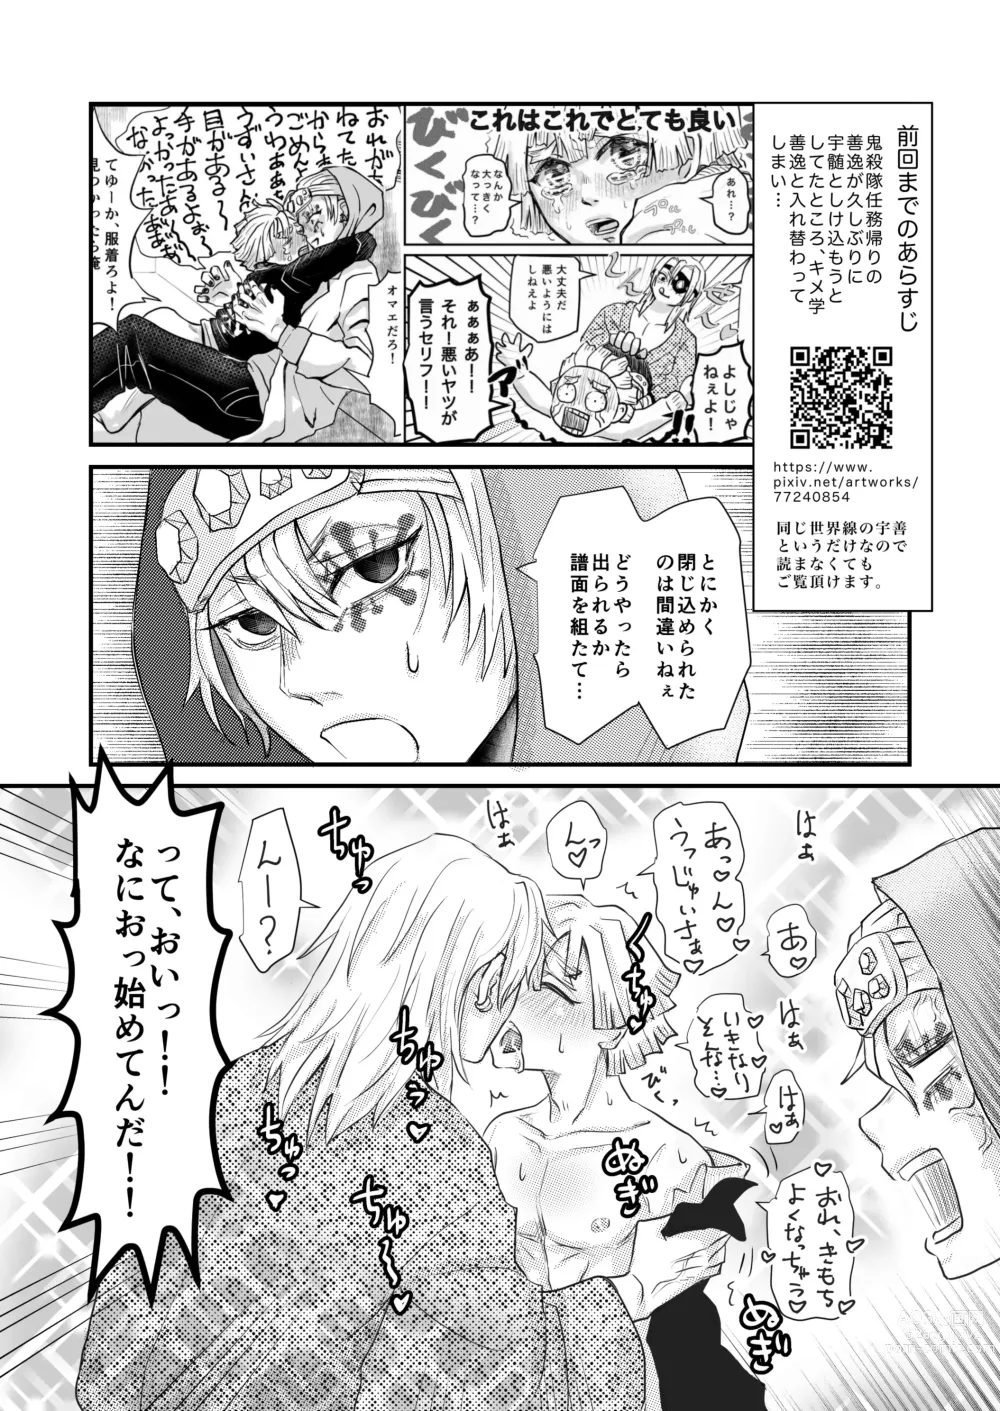 Page 3 of doujinshi Minna de Ikanai to Derarenai Heya